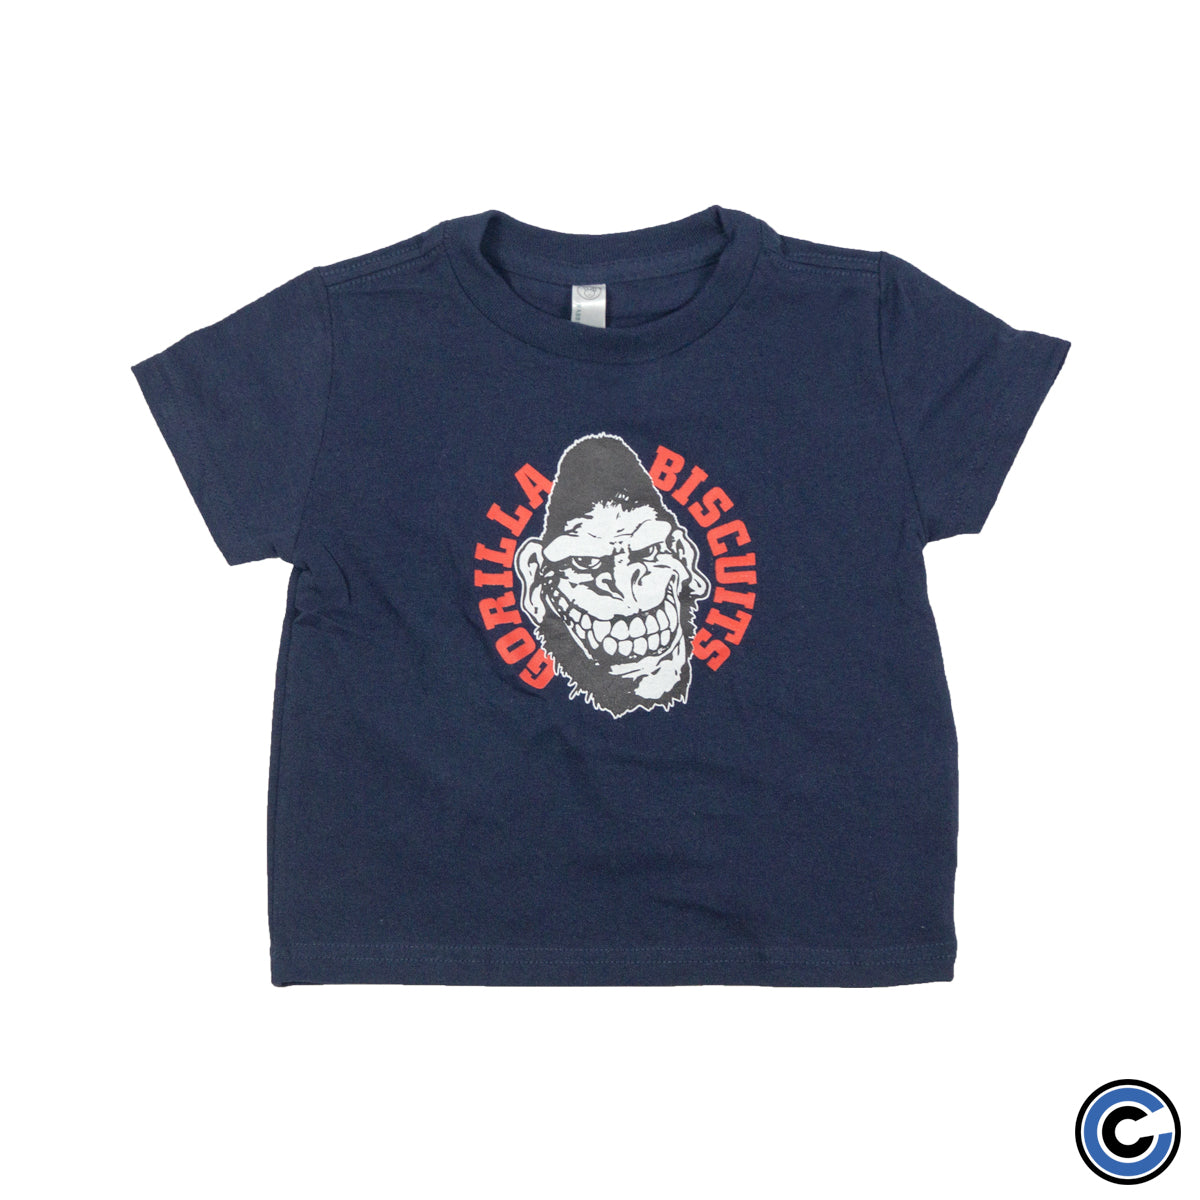 Gorilla Biscuits "Gorilla" Toddler Shirt